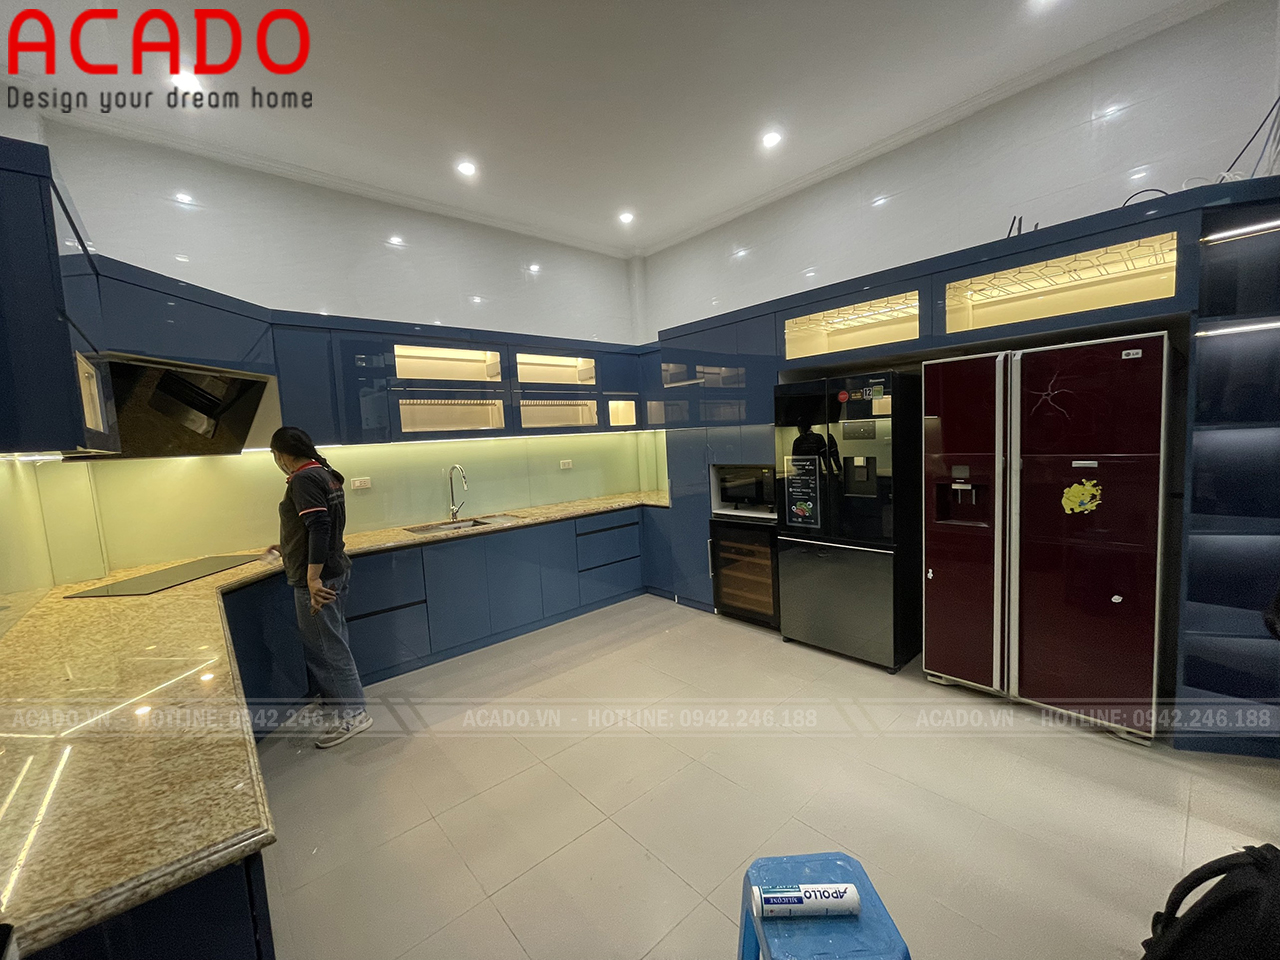 Tủ bếp mã màu xanh vô cùng nhã nhặn và tươi mới - ACADO.vn